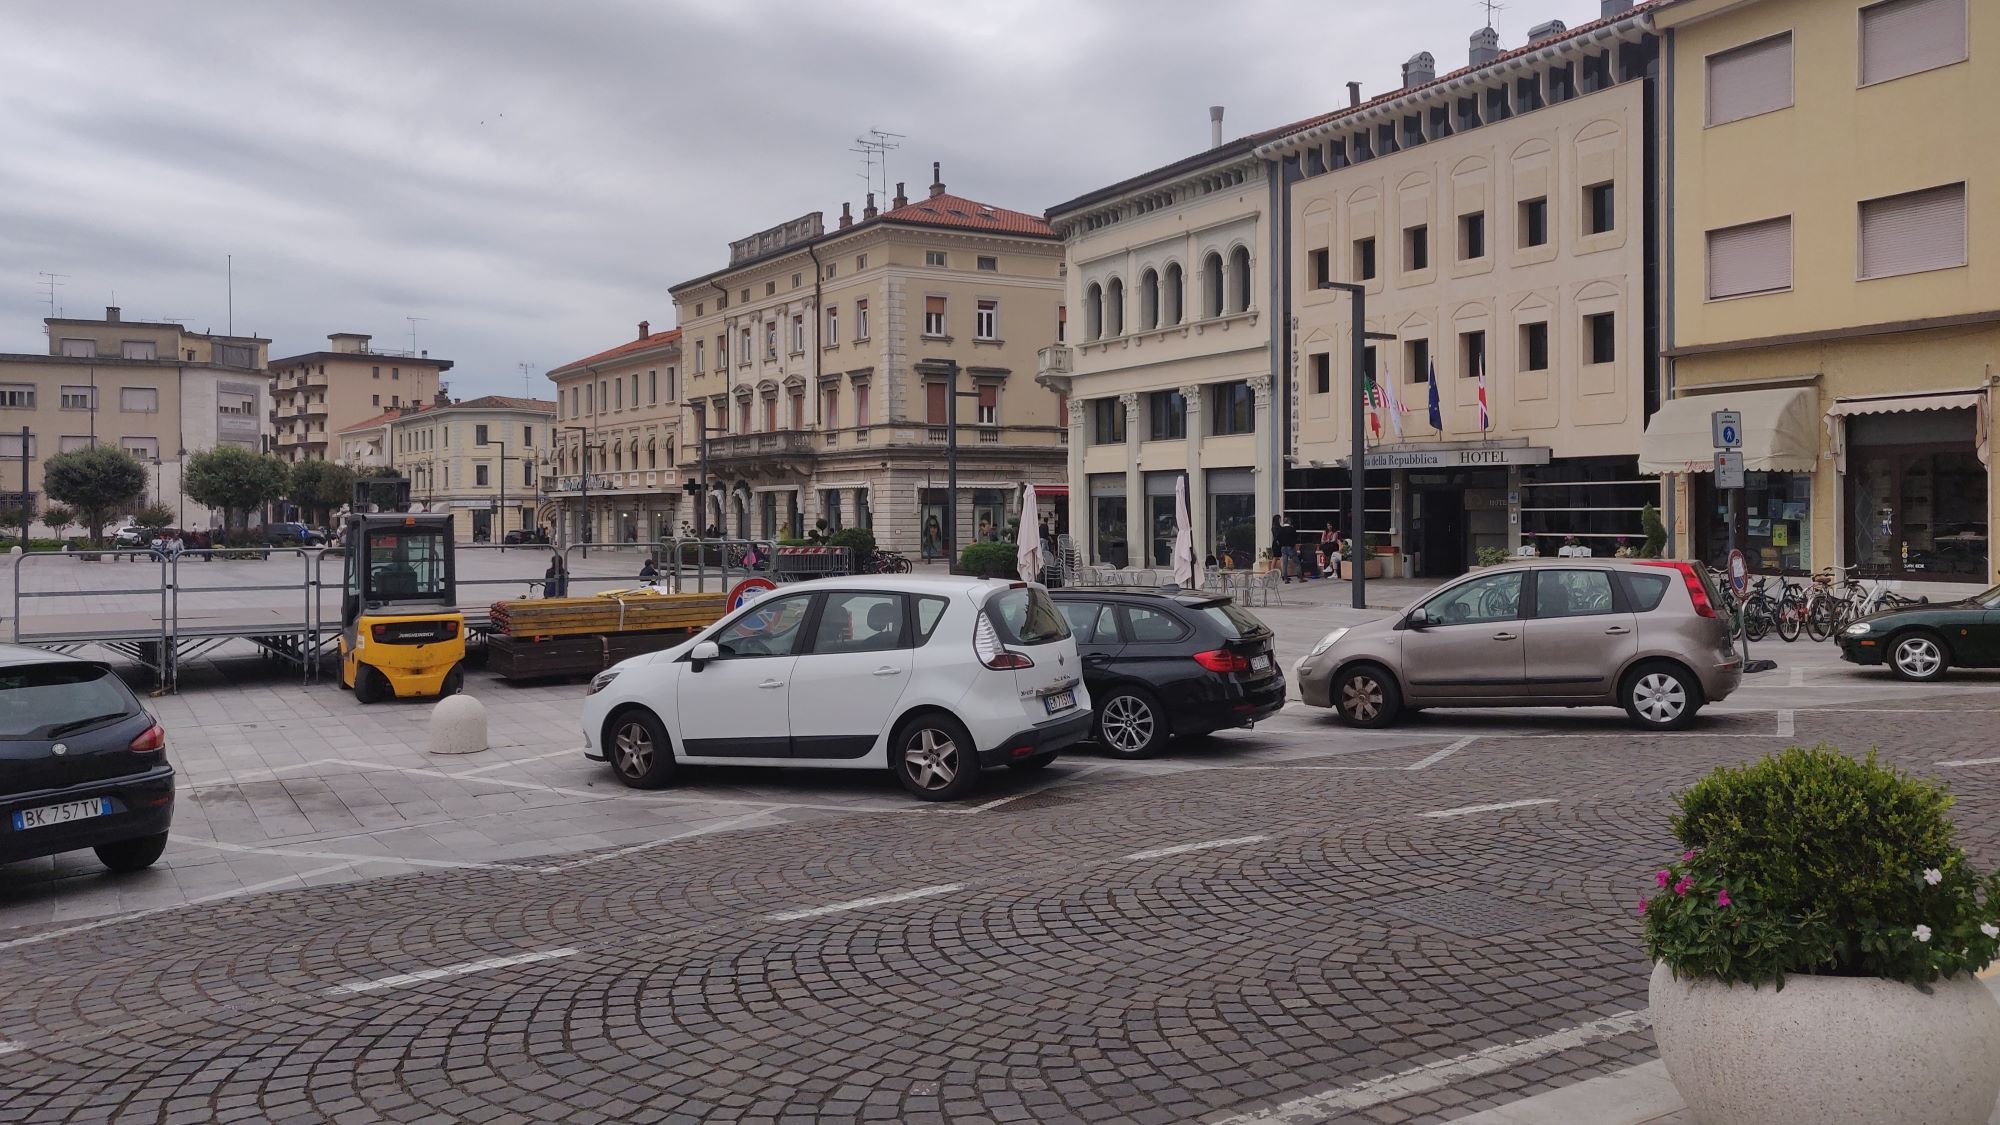 Mesto blizu Slovenije prepovedalo pljuvanje, takšna je kazen